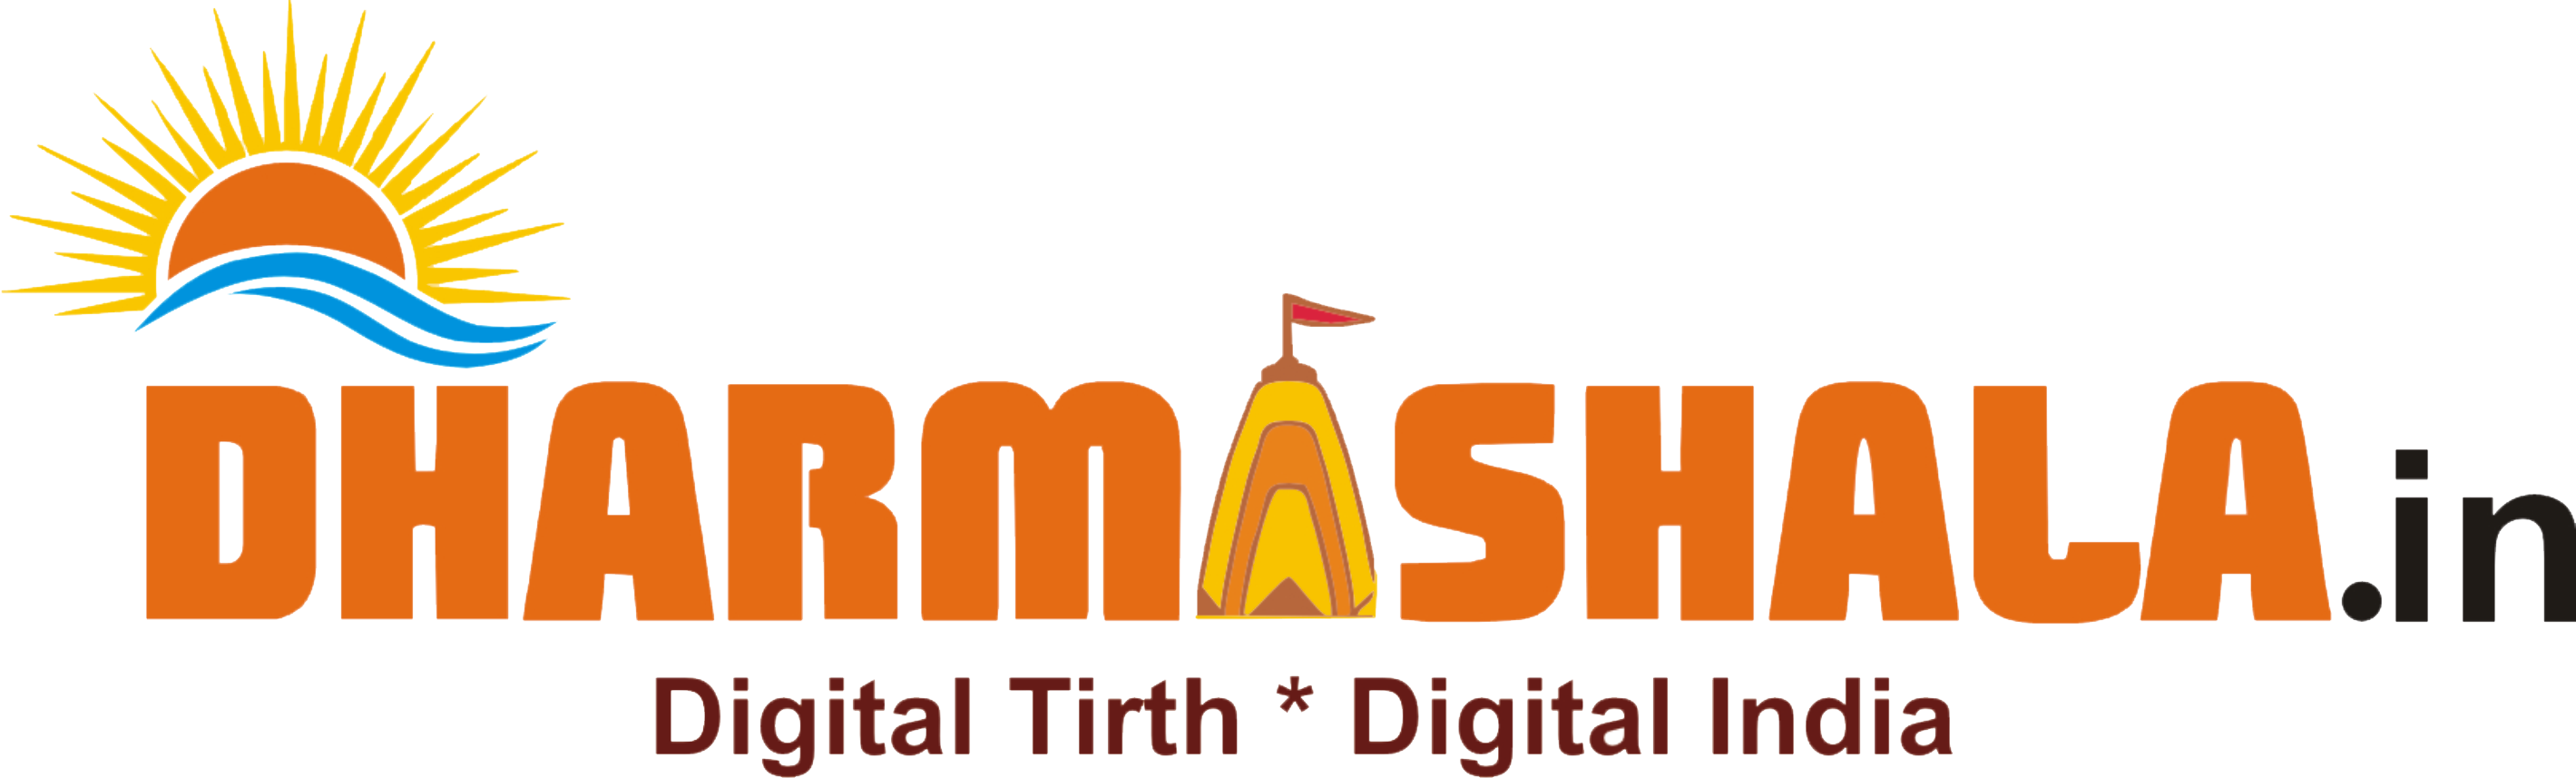 dharmashala_logo